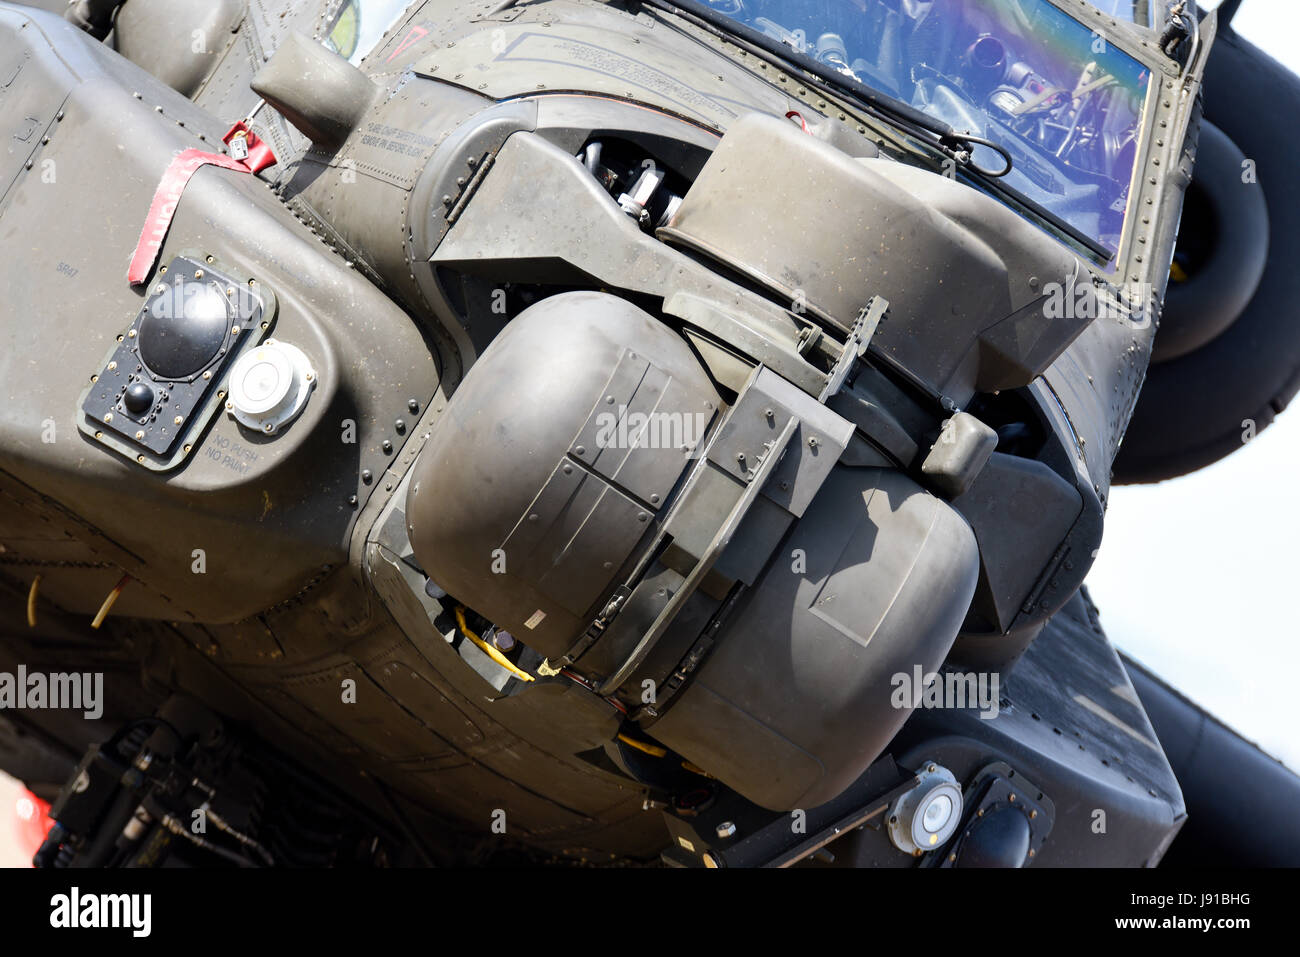 Ejército Británico, Cuerpo Aéreo del Ejército, Agusta Westland AH-64D Apache Longbow AH-1 ataque helicóptero detalles de la nariz. Sensores de focalización Foto de stock